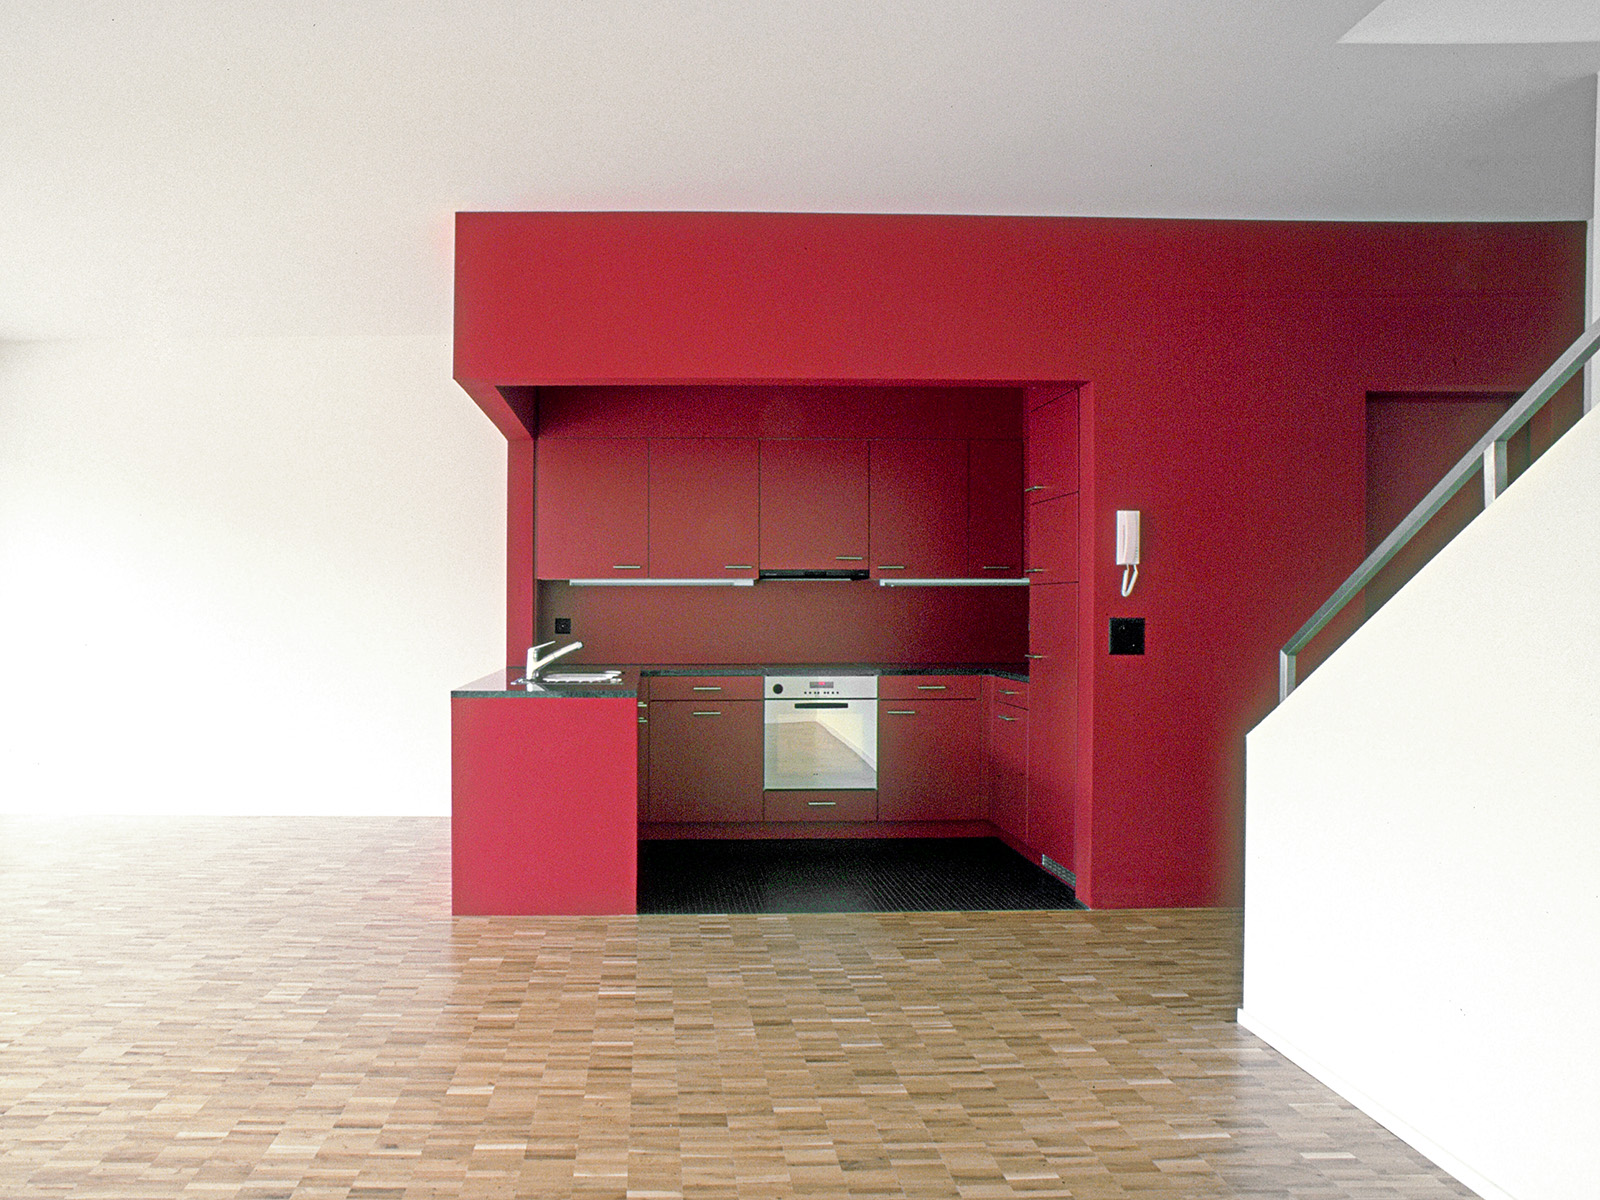 Innenraum mit rotem Küchenkubus